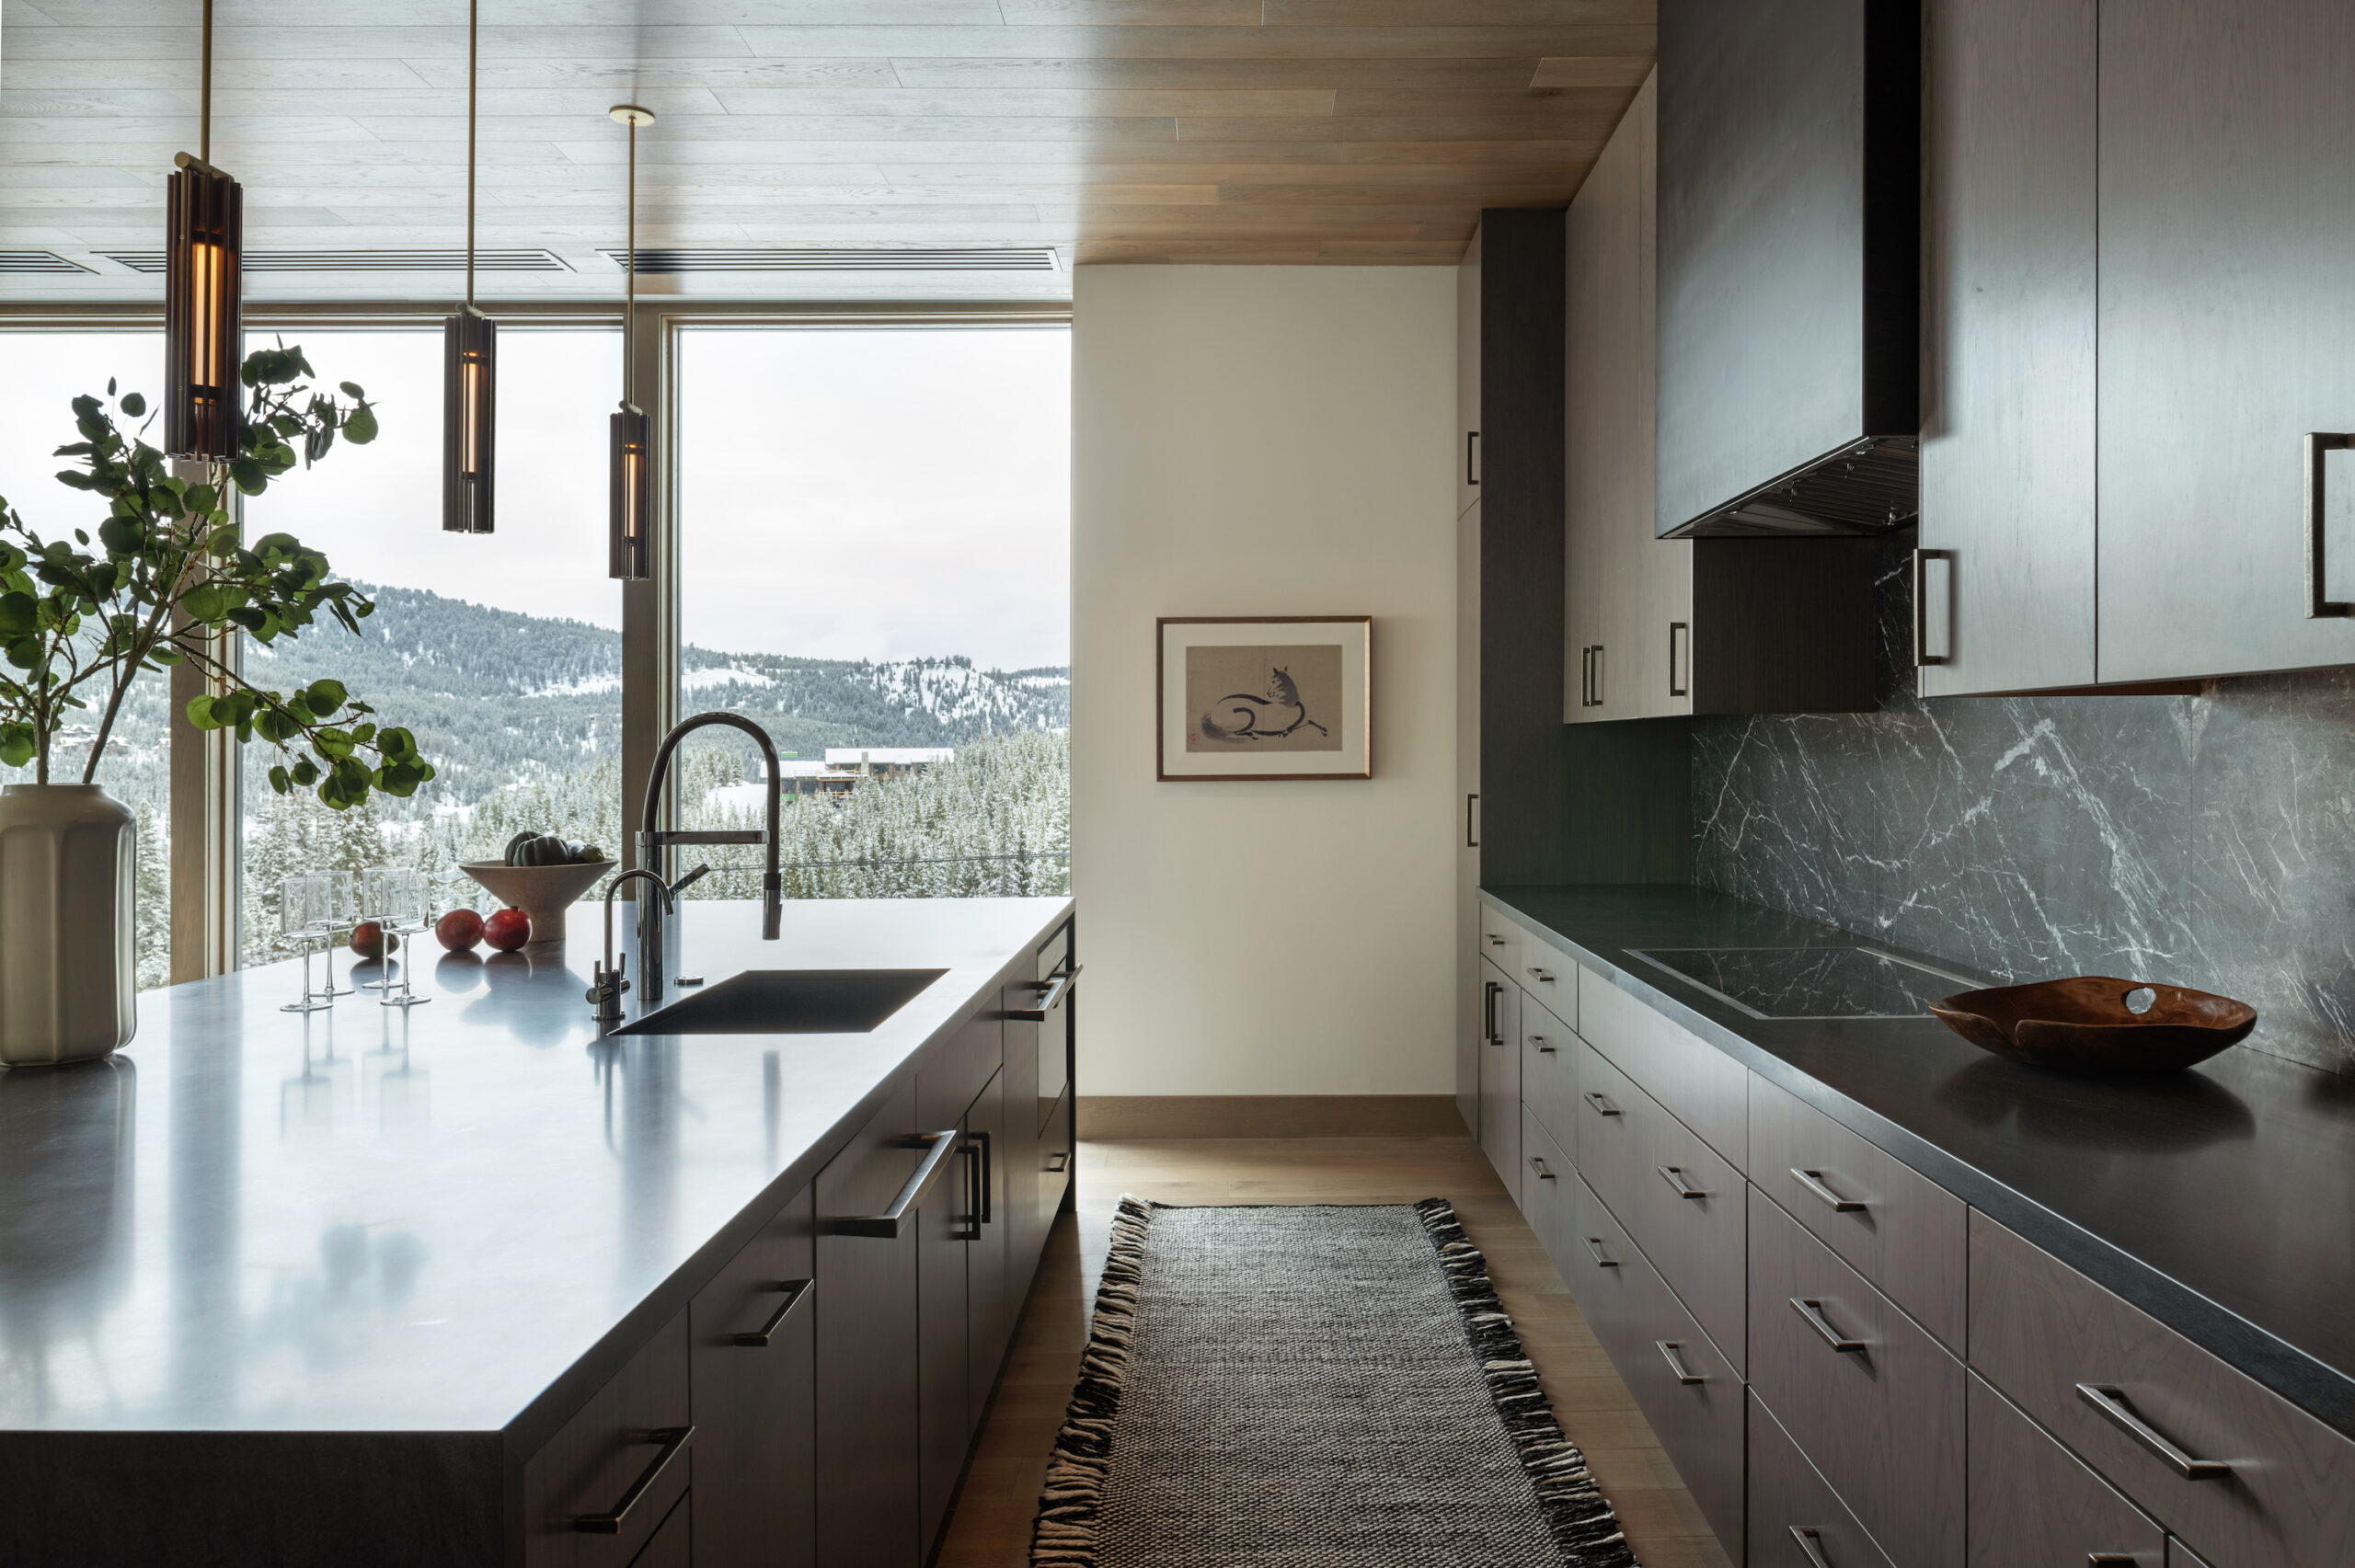 Dark, modern kitchen with mountain view